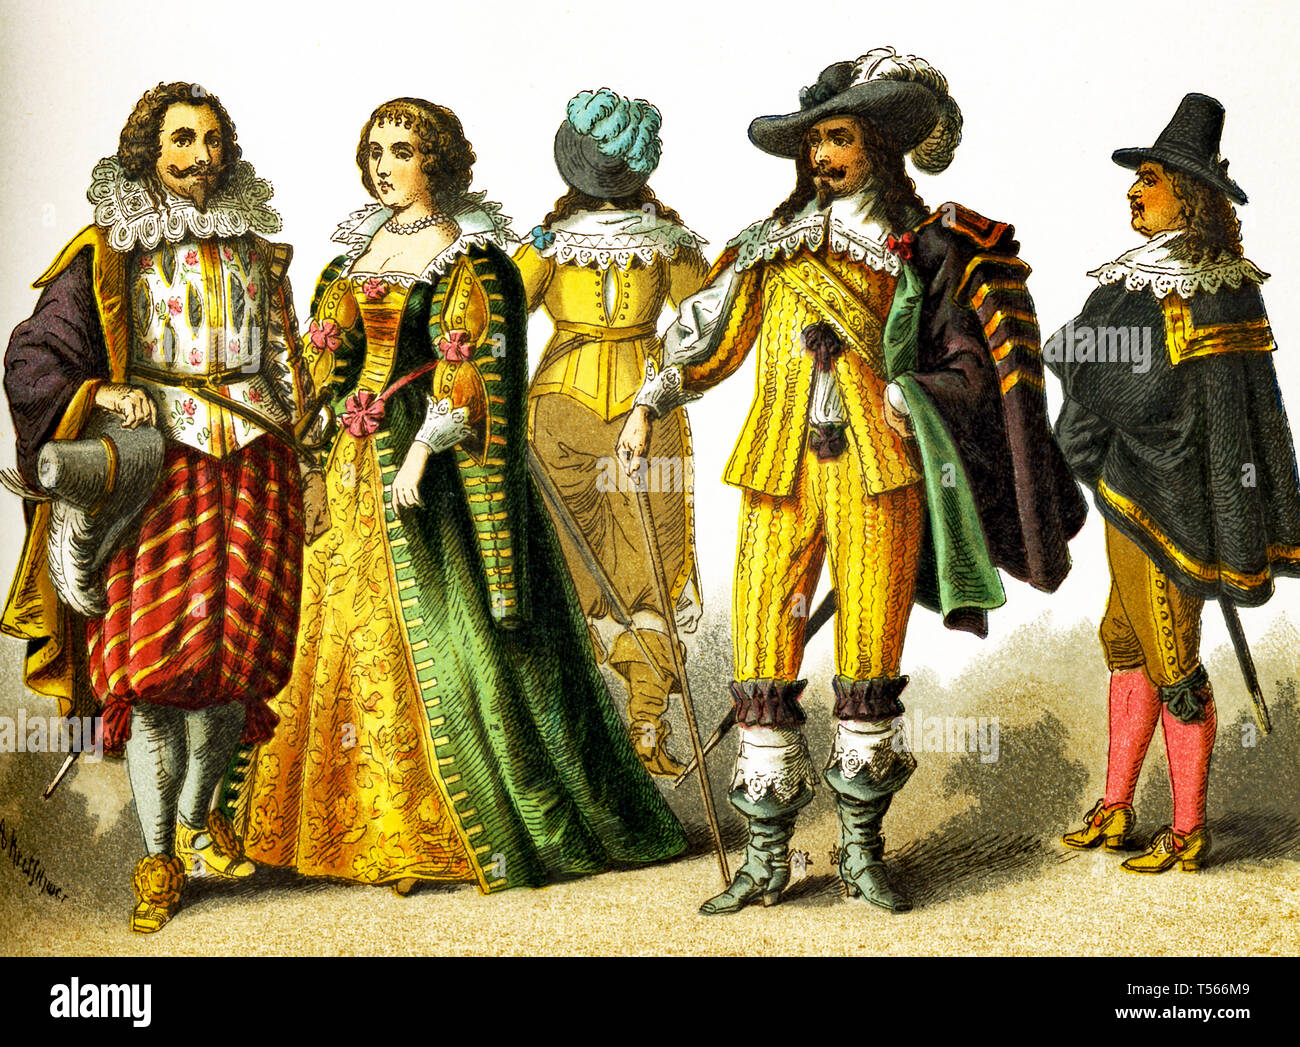 Le figure qui rappresentano il popolo francese nel 1600s. Essi sono, da sinistra a destra: un cavalier, una donna di rango, tre cavalieri. Questa illustrazione risale al 1882. Foto Stock